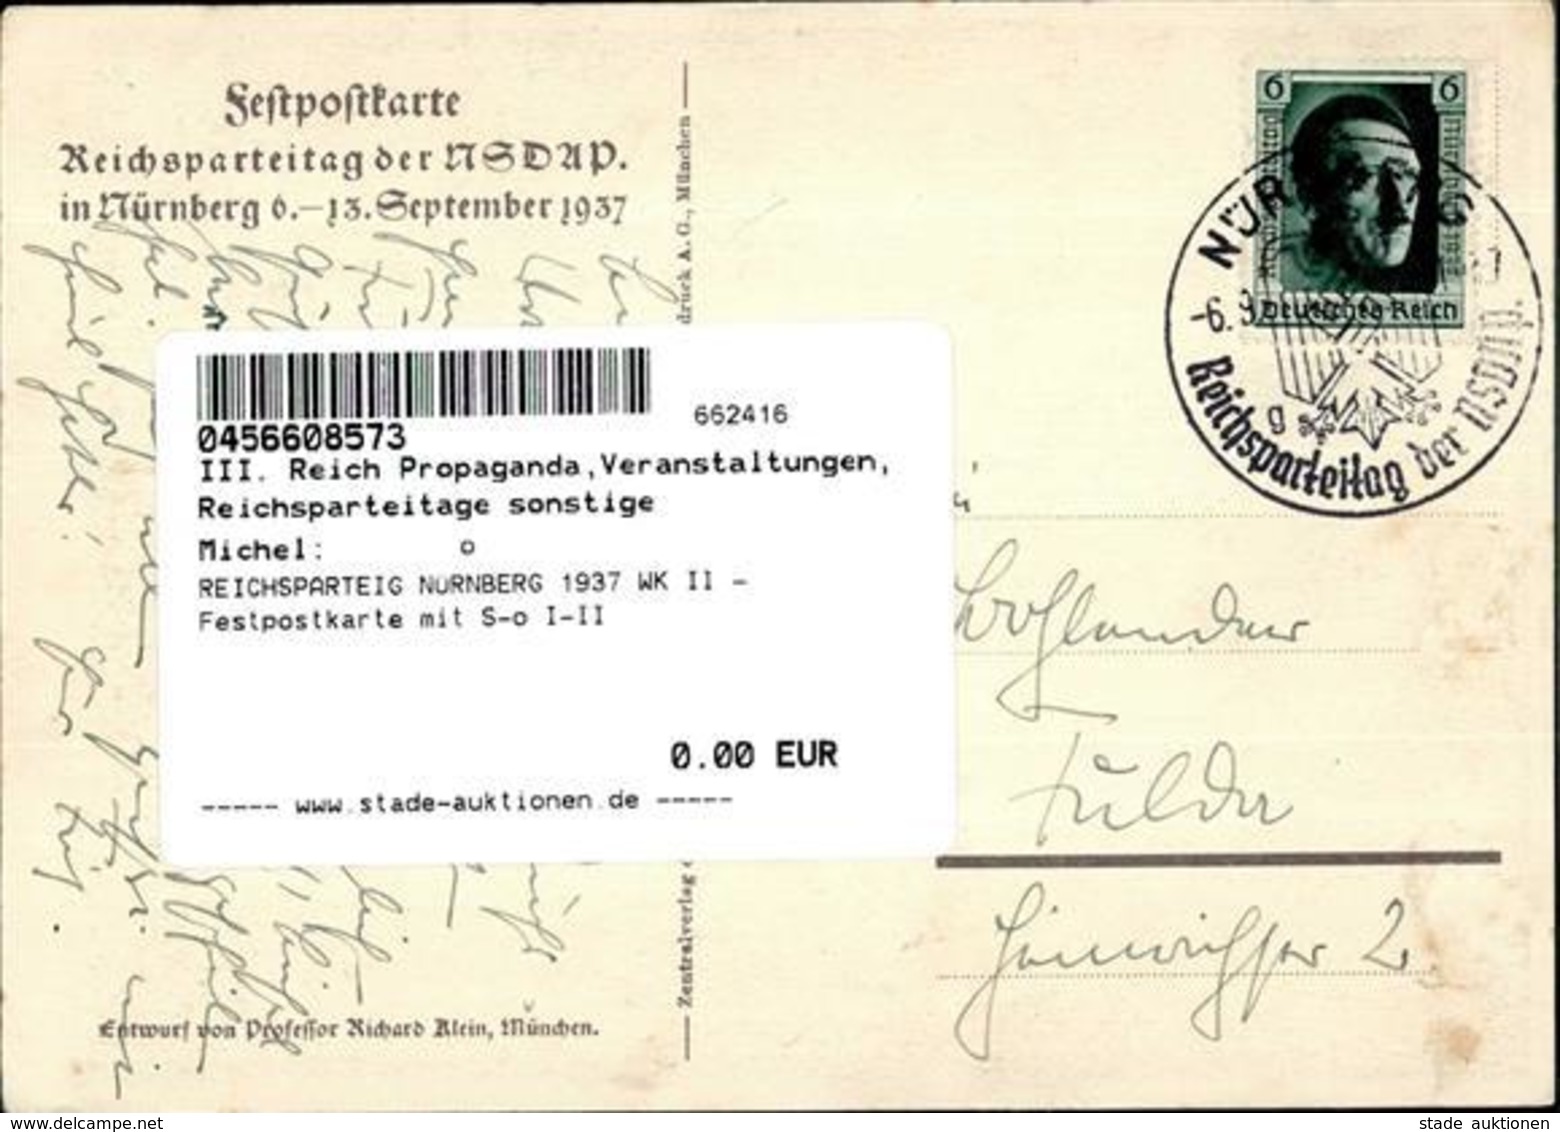 REICHSPARTEIG NÜRNBERG 1937 WK II - Festpostkarte Mit S-o I-II - Guerre 1939-45